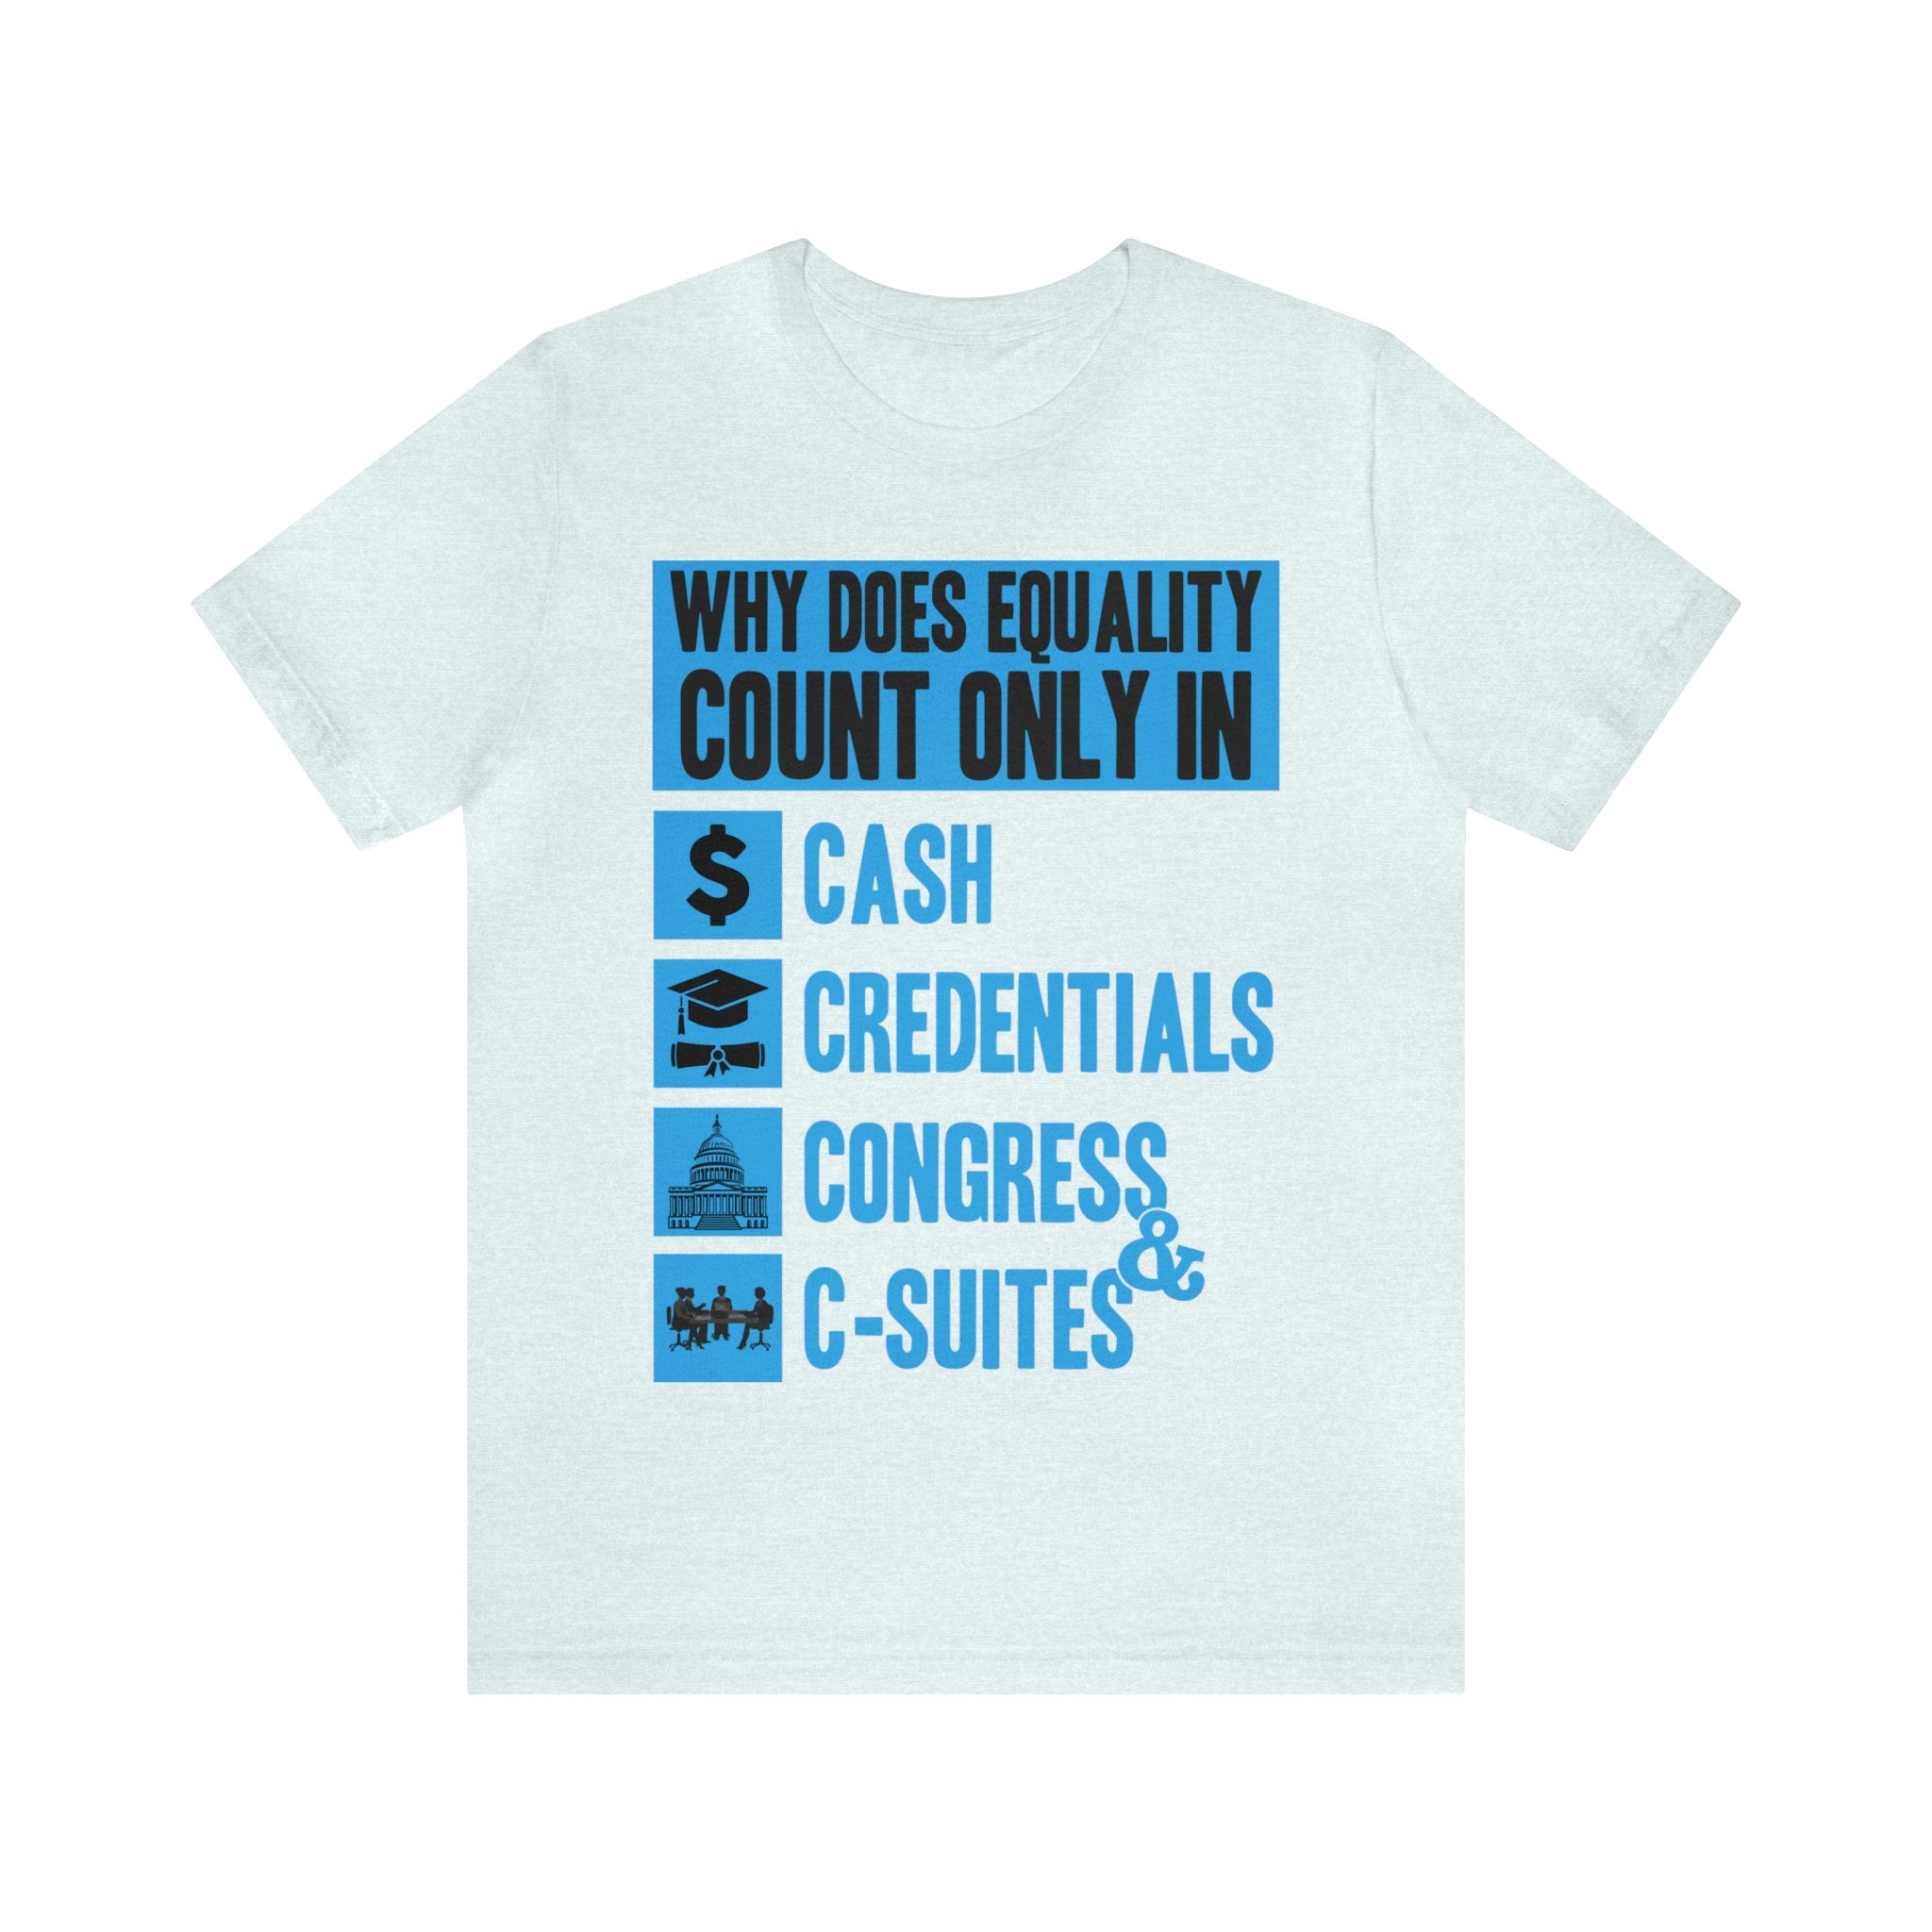 Cash Credentials Congress & C-suites - Blue